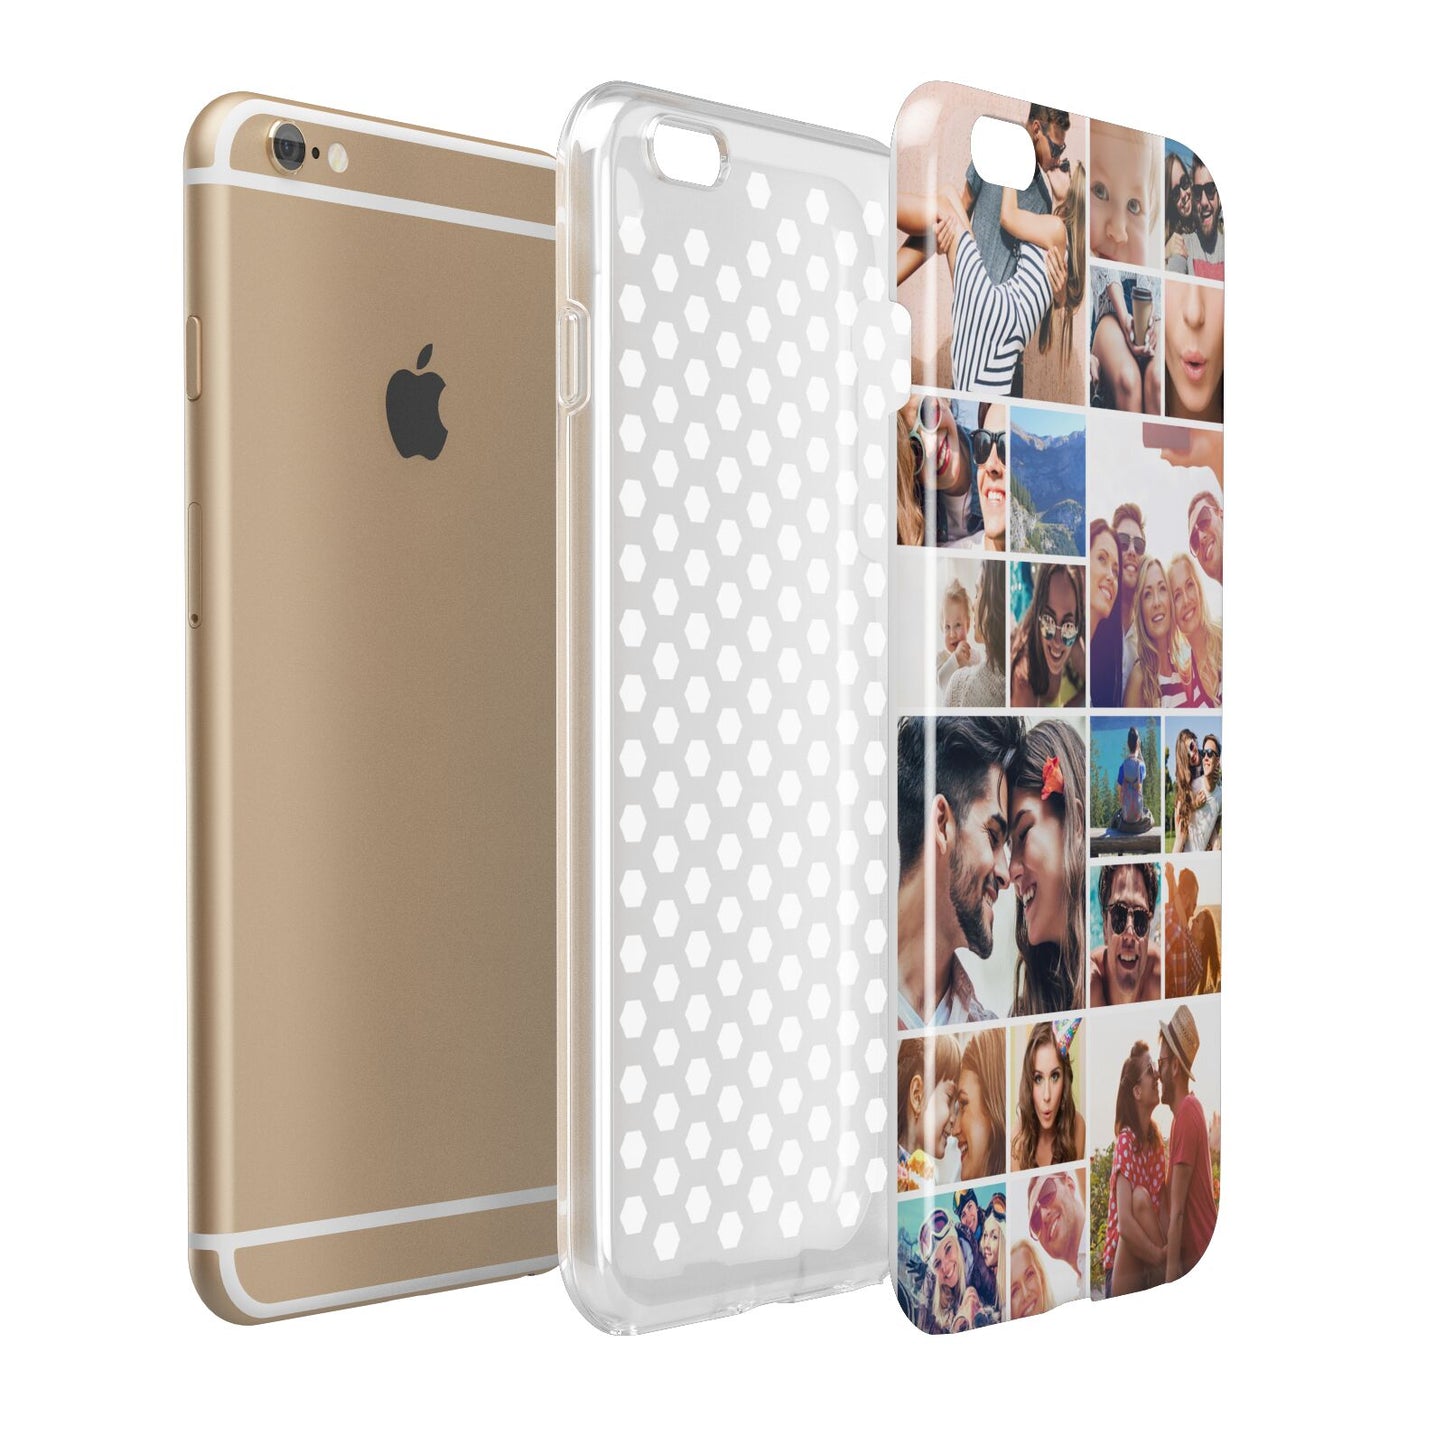 Photo Grid Apple iPhone 6 Plus 3D Tough Case